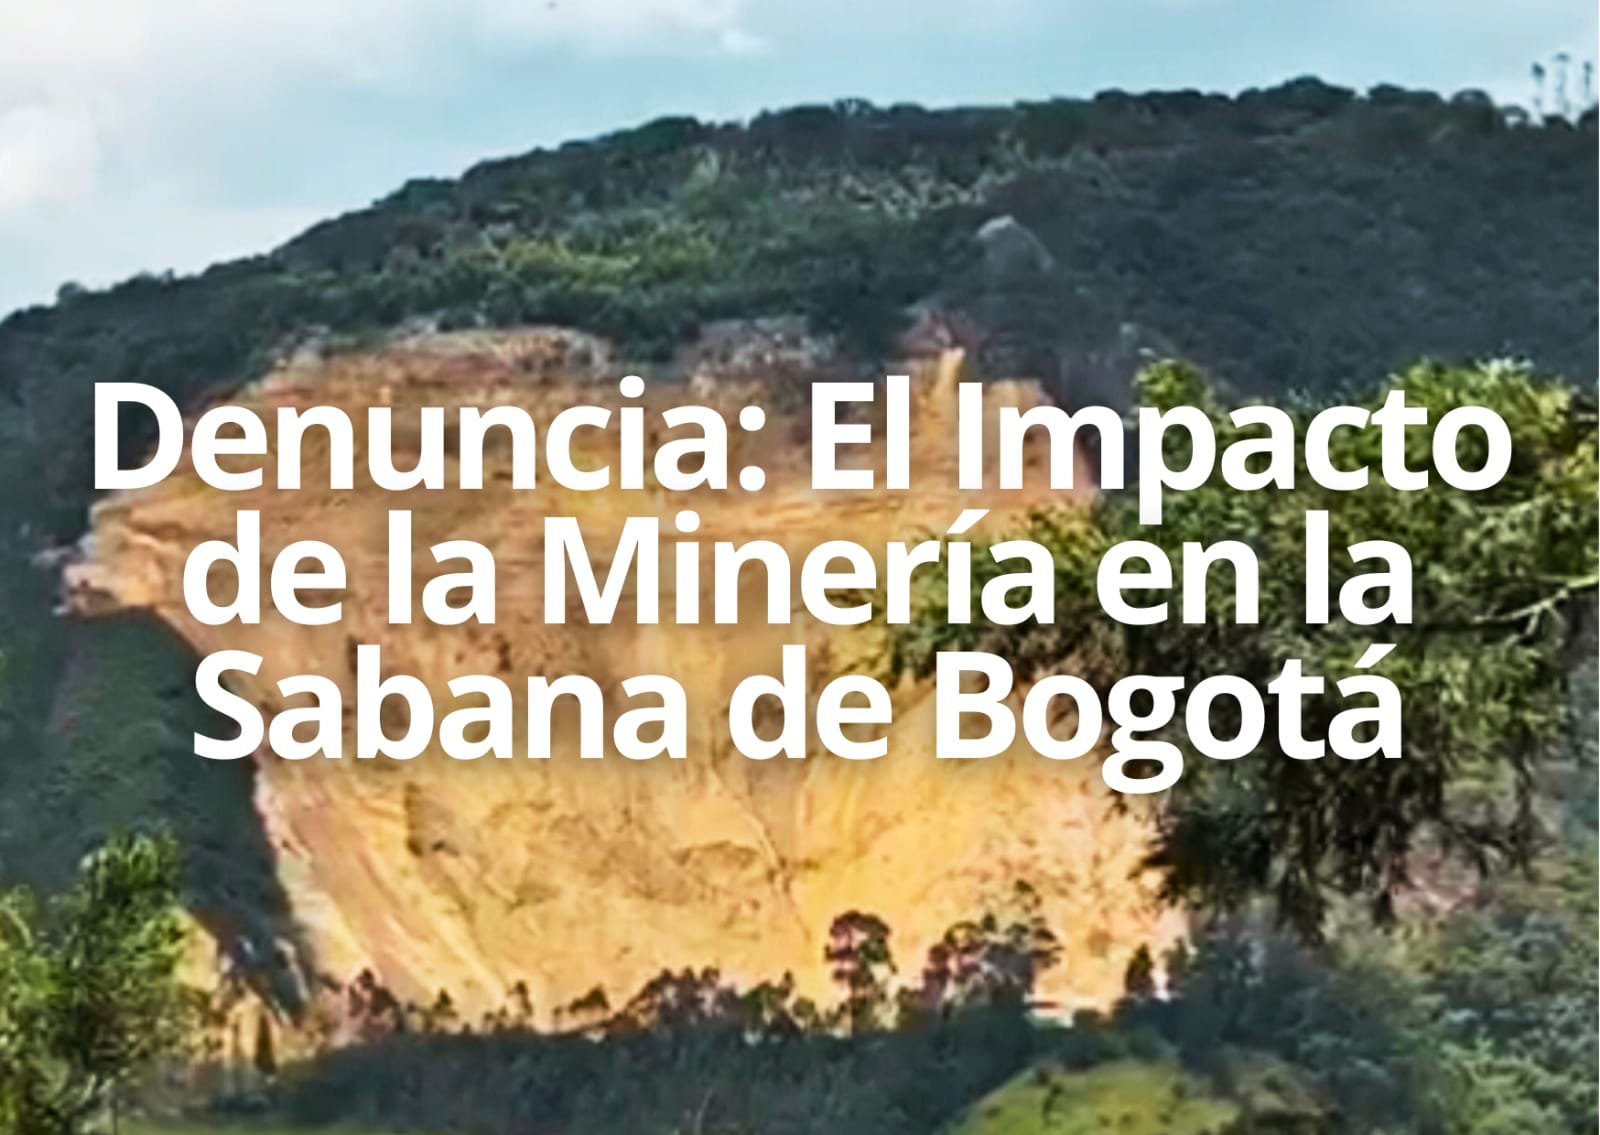 El Impacto de la Minería en la Sabana de Bogotá